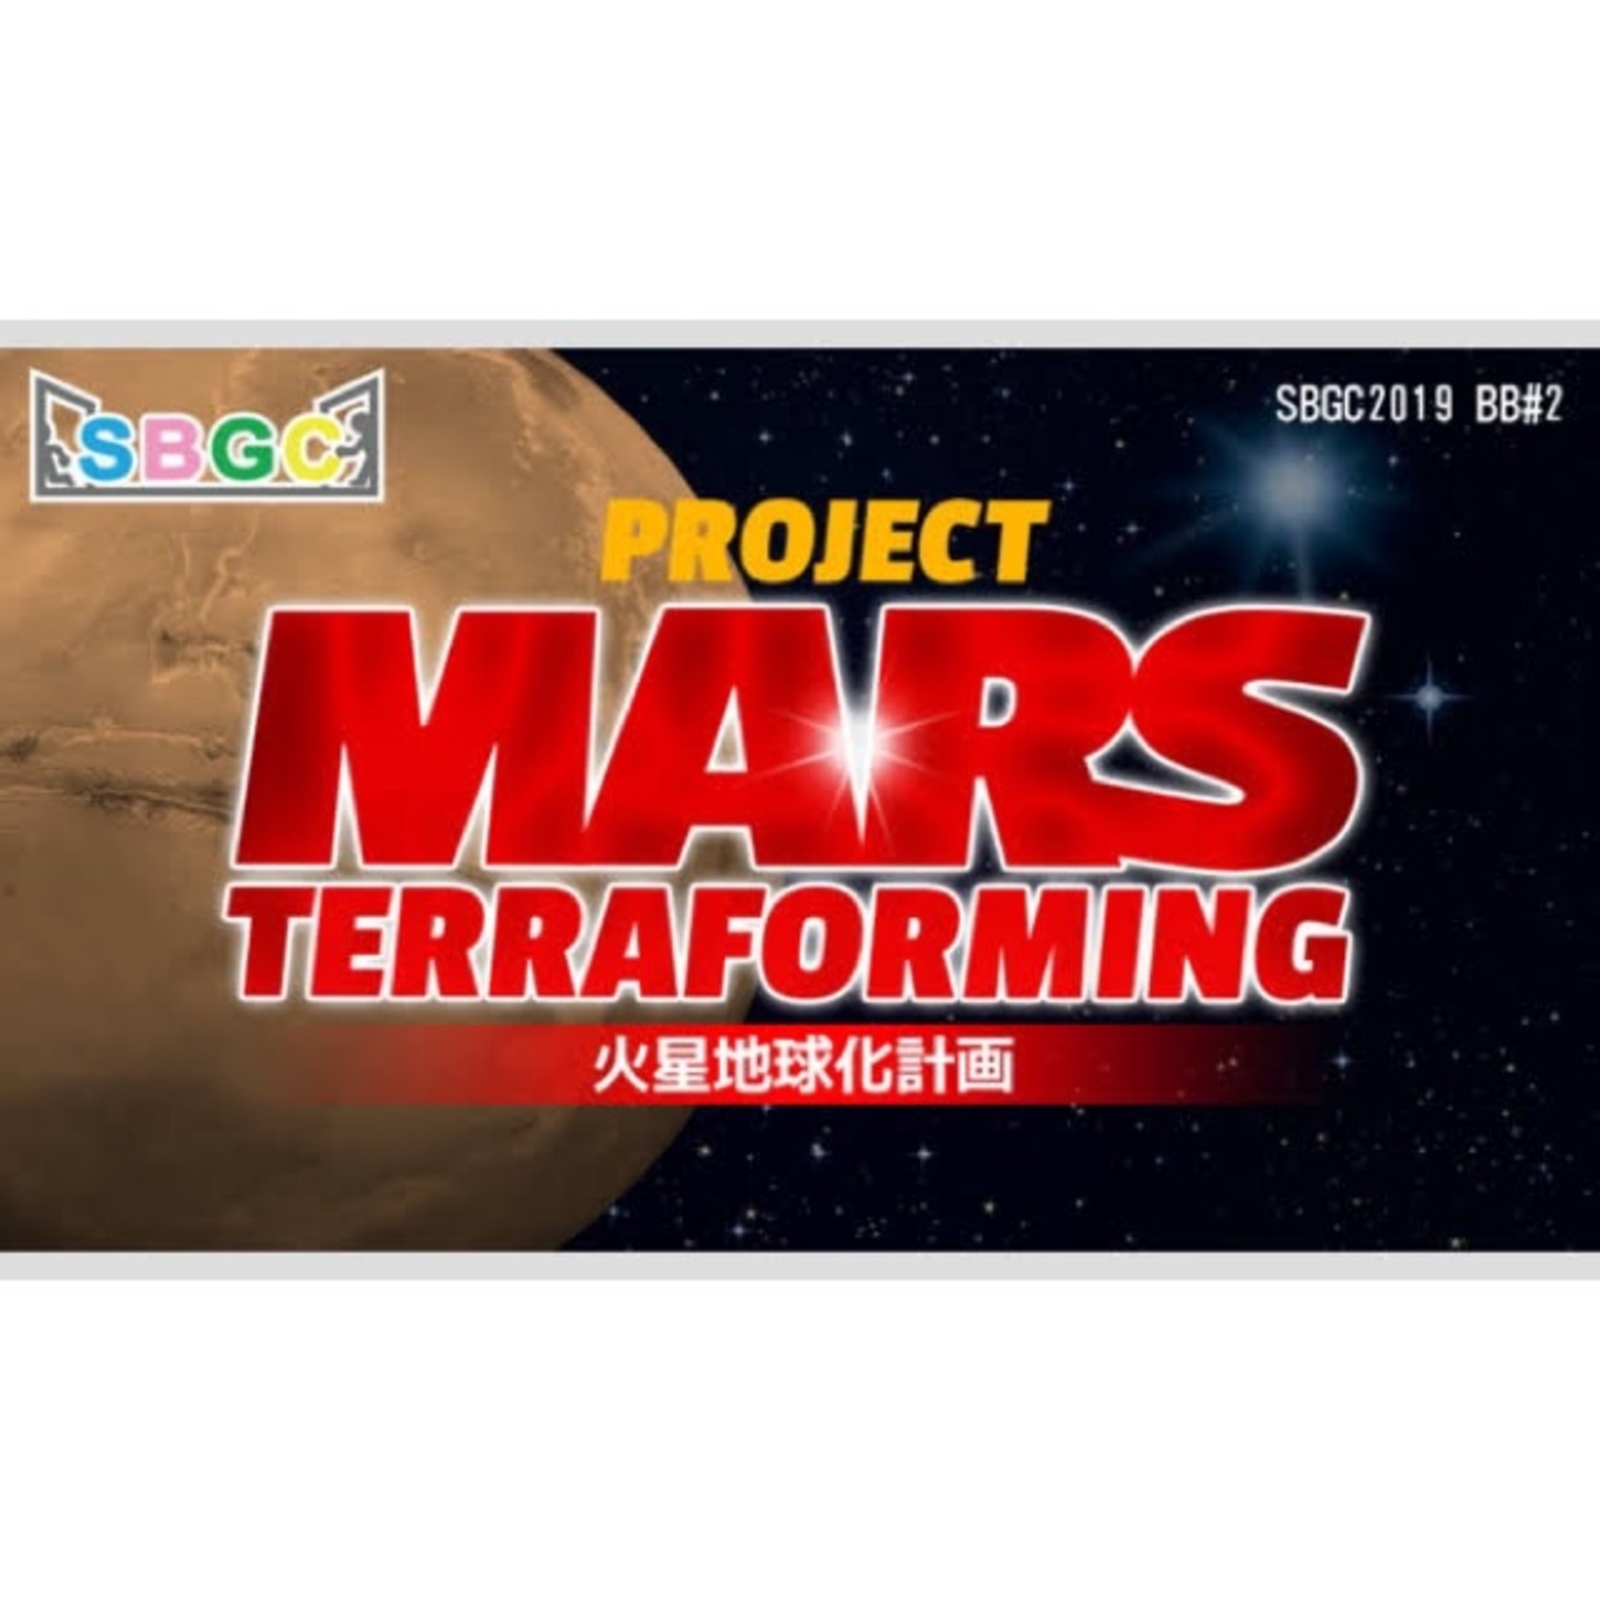 【大崎】火星地球化計画【SBGC】